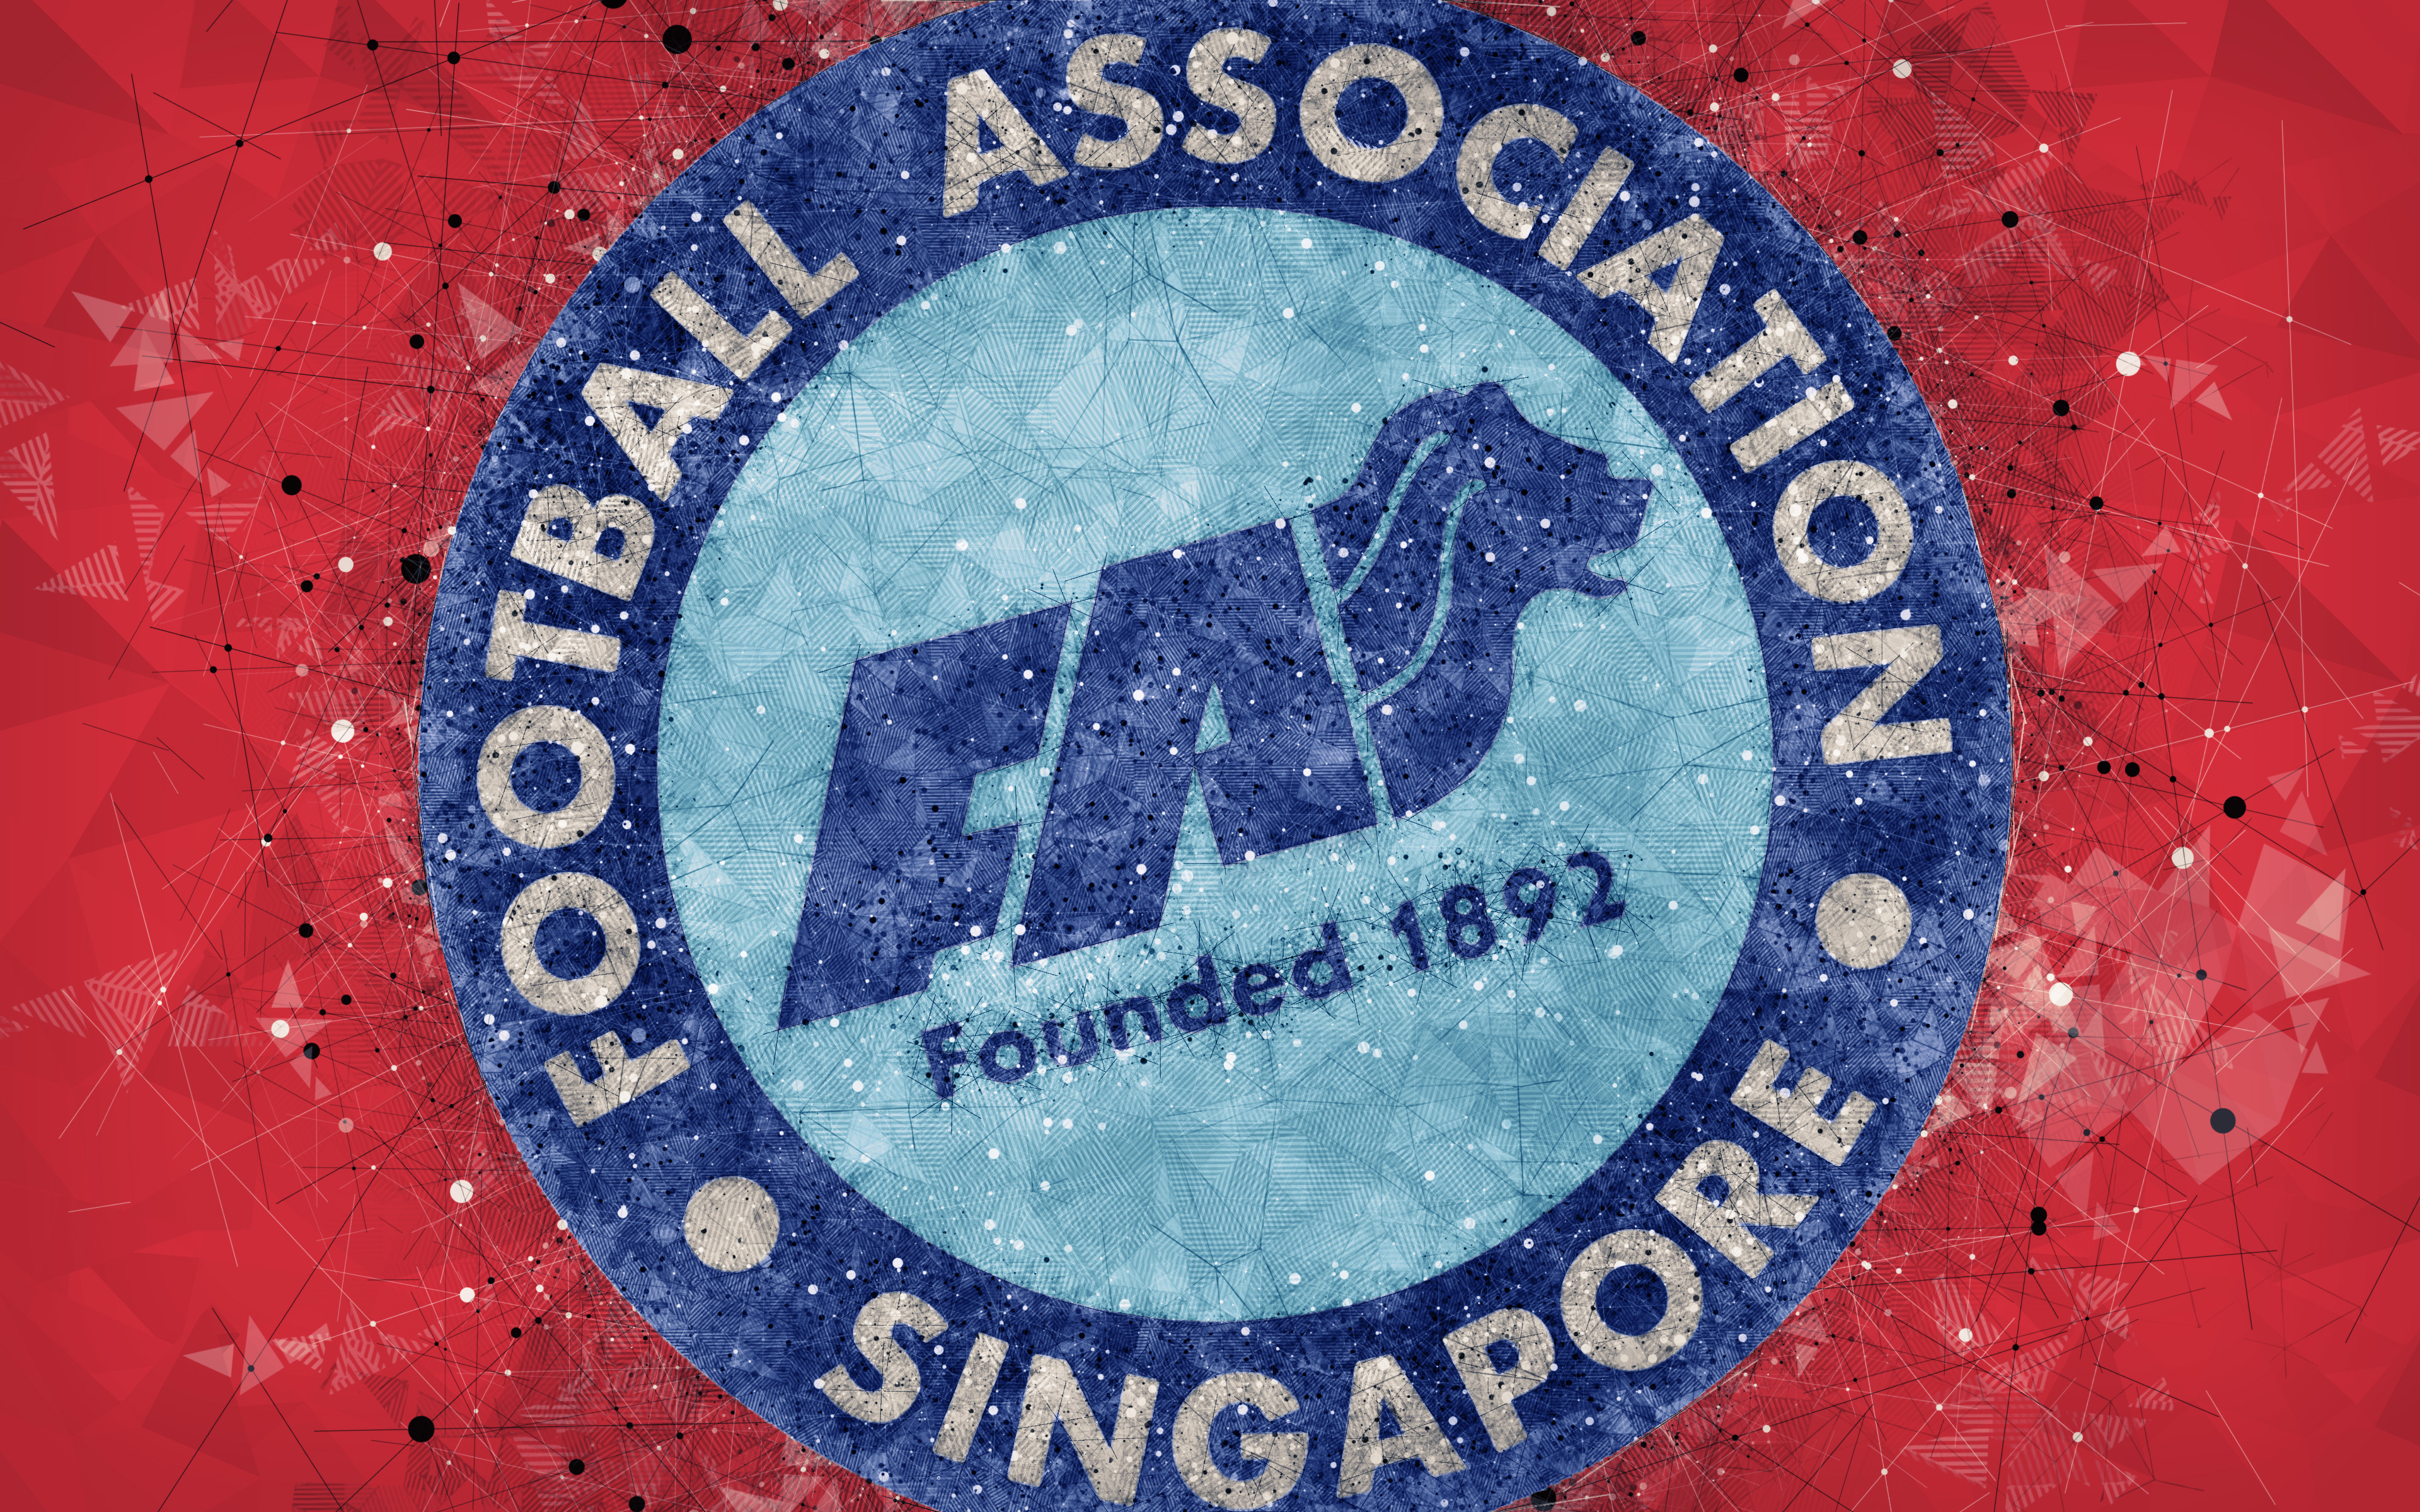 451559 Обои и Сборная Сингапура По Футболу картинки на рабочий стол. Скачать  заставки на ПК бесплатно